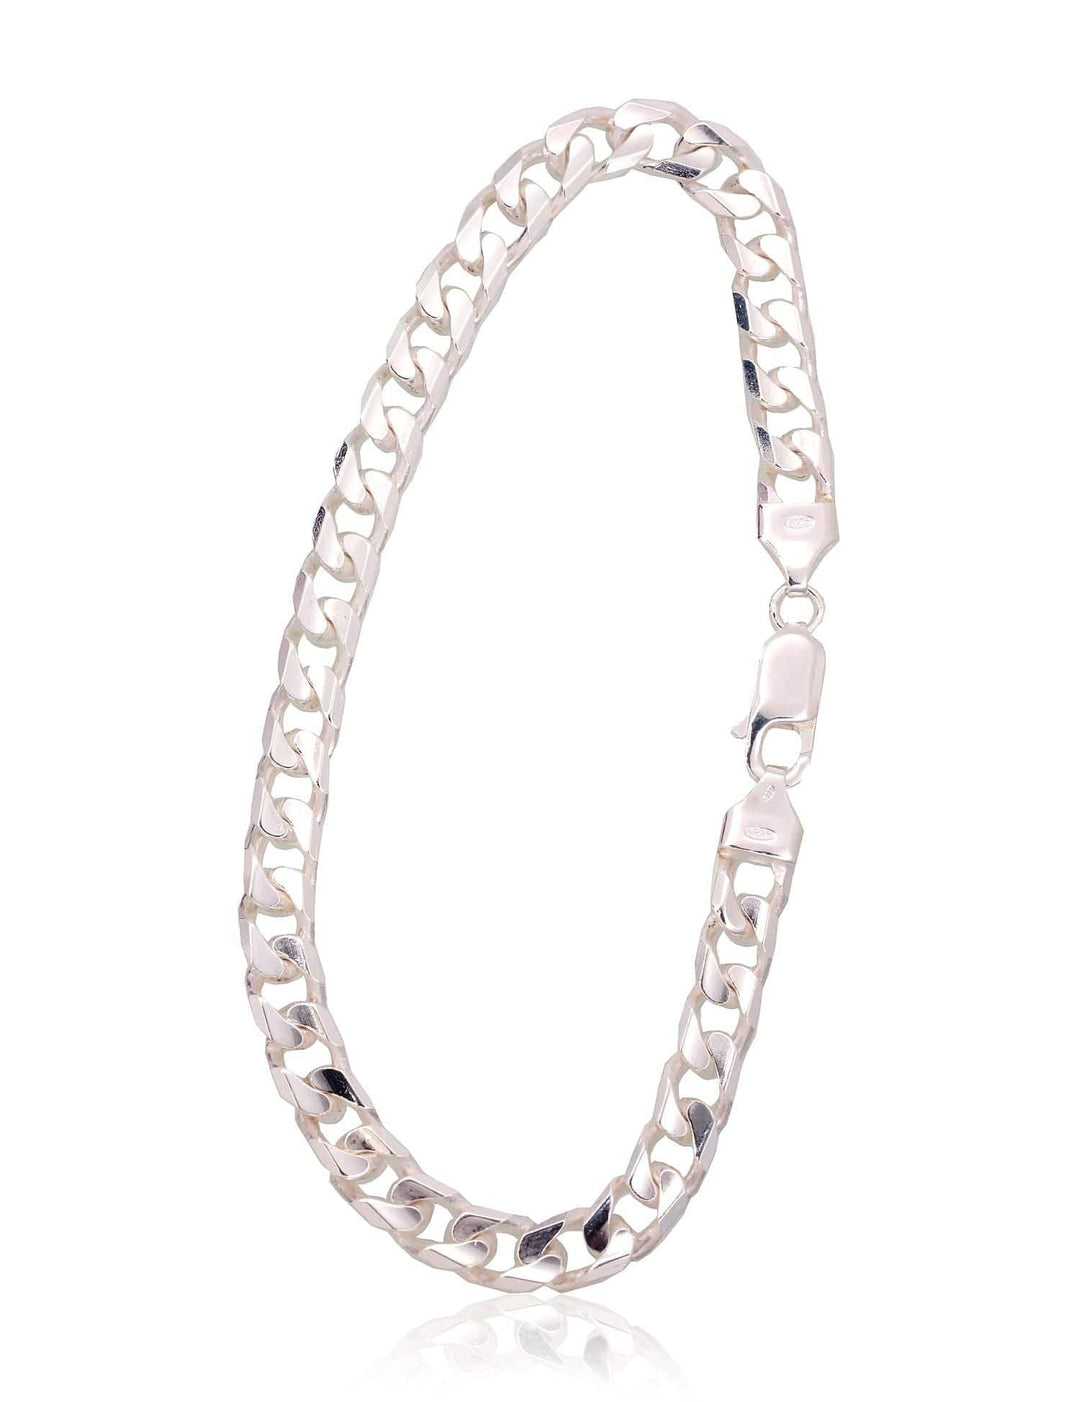 Hõbekett Curb 6 mm , kantide teemanttöötlus #2400146-bracelet, Hõbe 925° - Premiumkellad